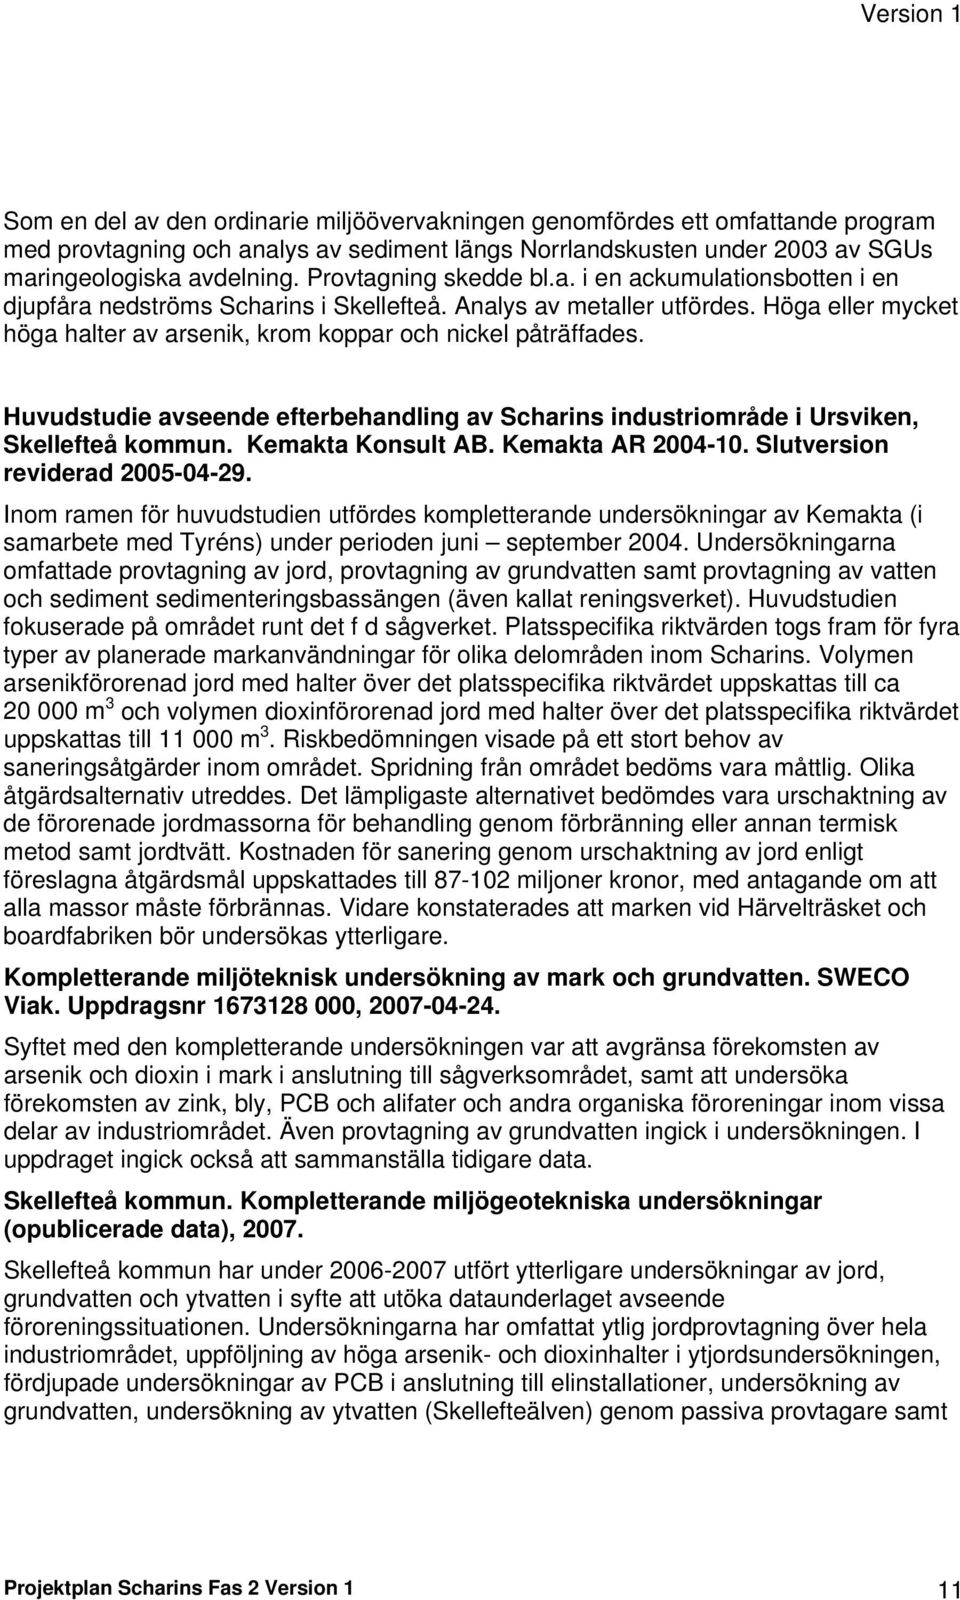 Höga eller mycket höga halter av arsenik, krom koppar och nickel påträffades. Huvudstudie avseende efterbehandling av Scharins industriområde i Ursviken, Skellefteå kommun. Kemakta Konsult AB.